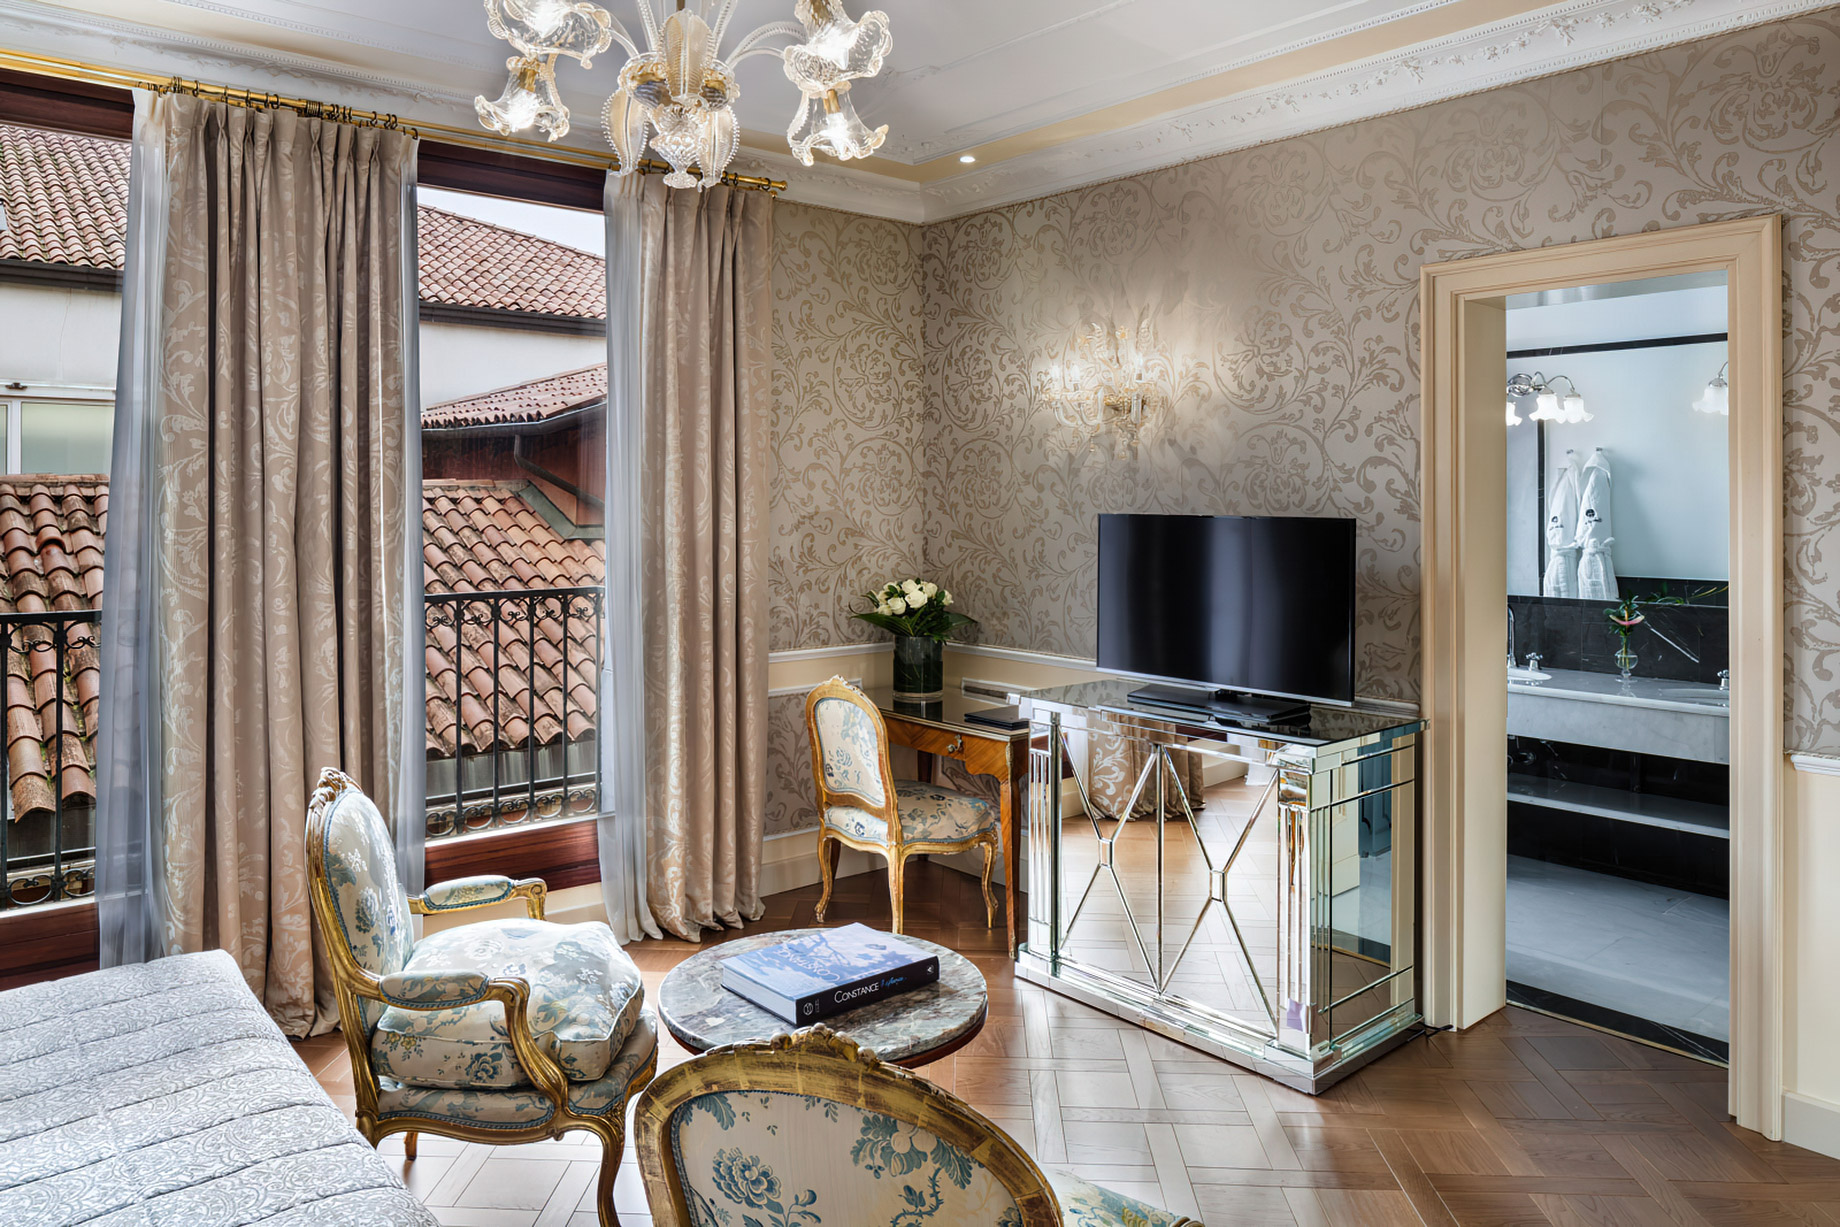 Baglioni Hotel Luna, Venezia – Venice, Italy – Deluxe Room Interior